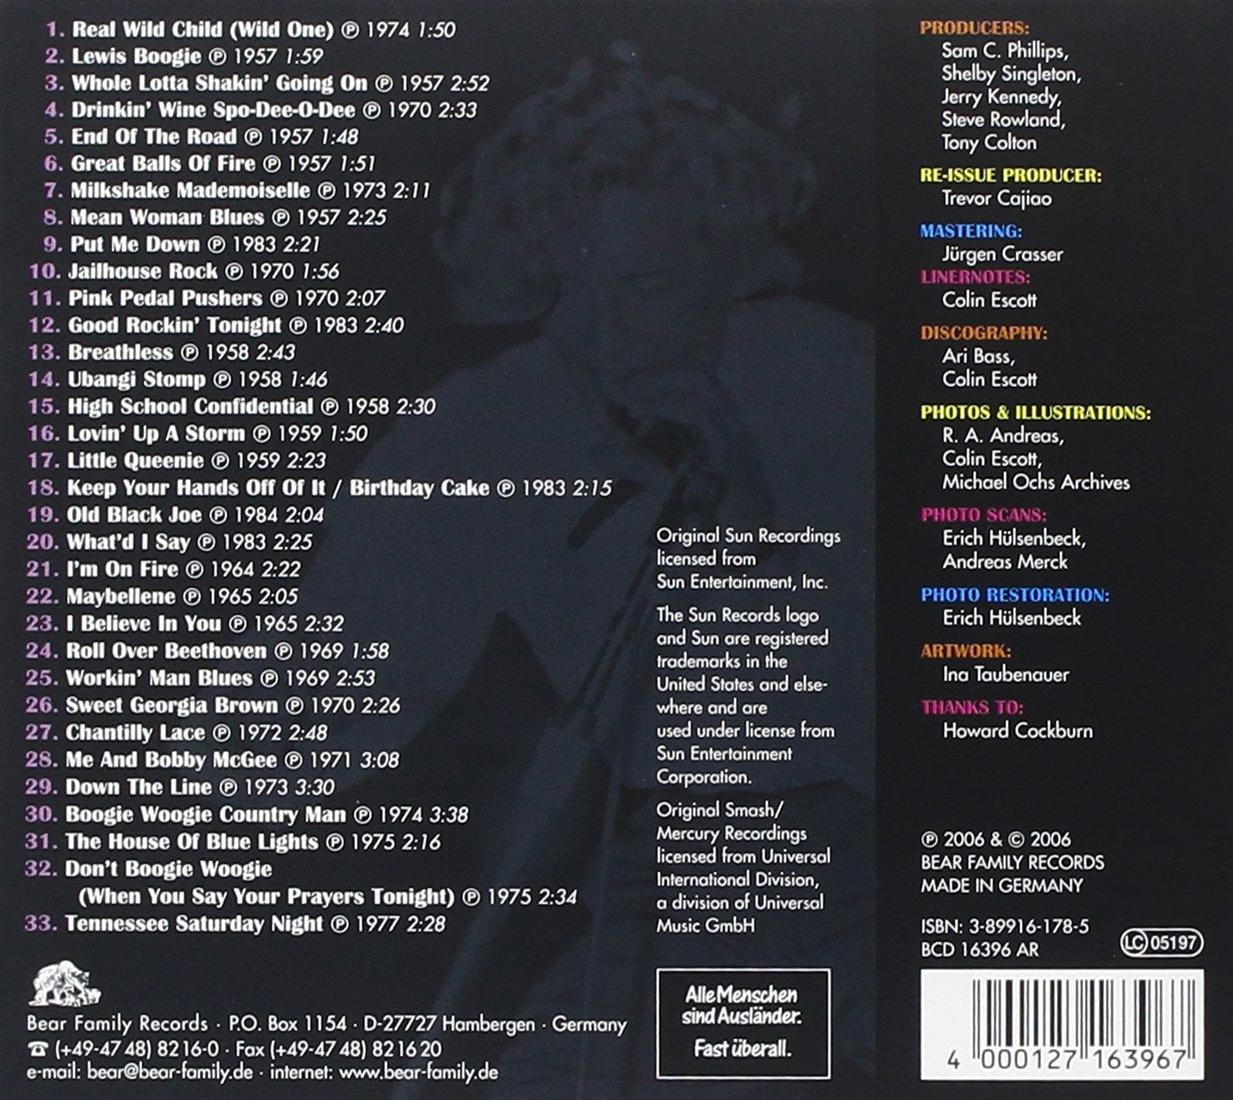 Lee - Rocks Jerry - (CD) Lewis